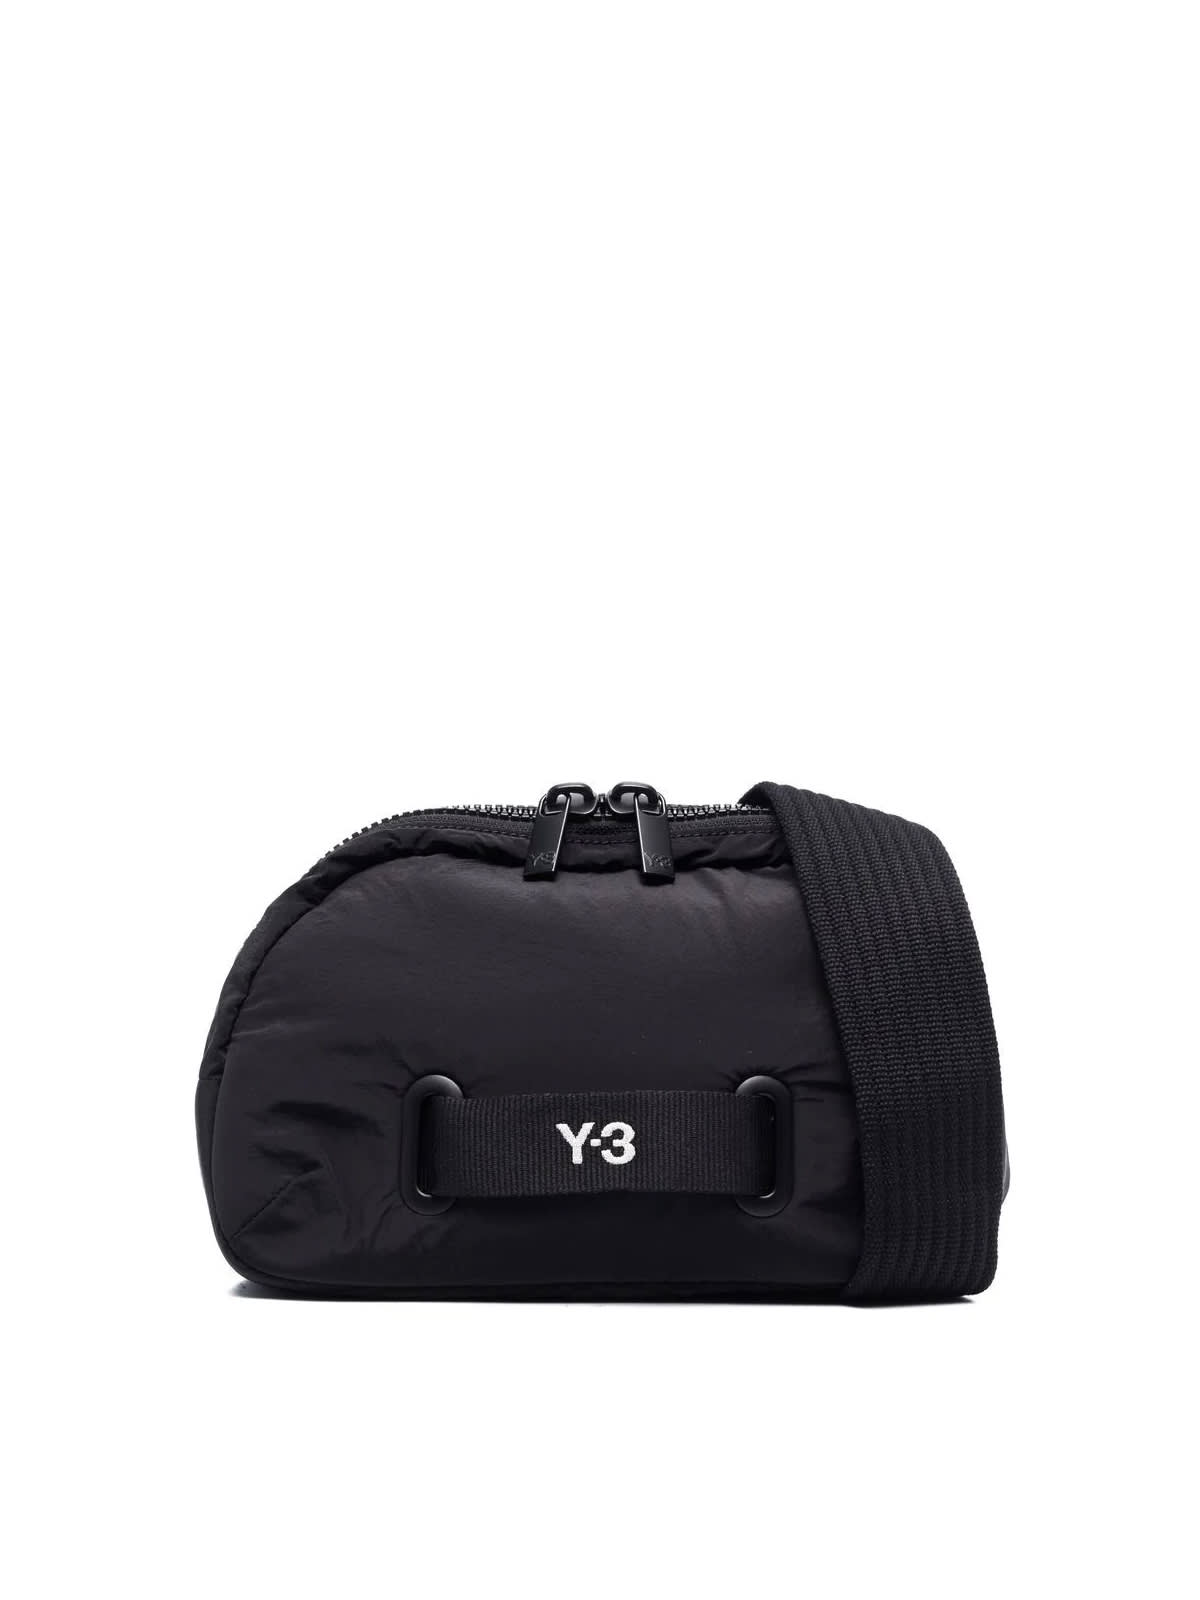 Y-3 X Body Bag